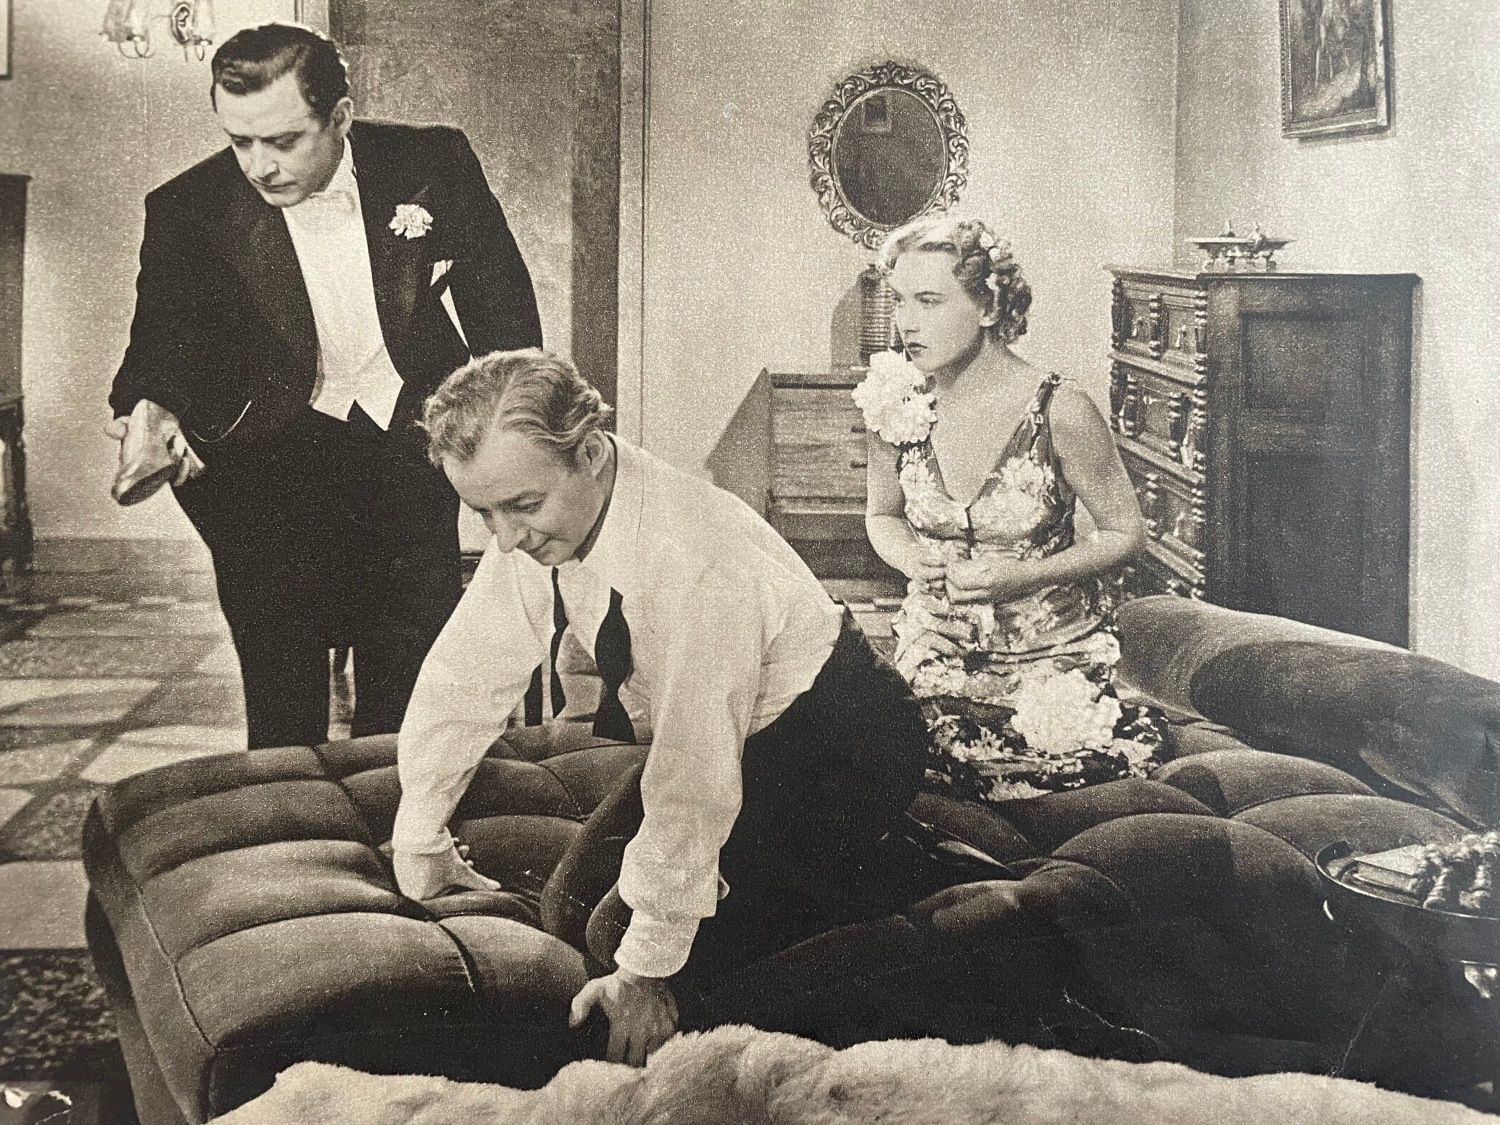 Heinz Rühmann spielte 1937 (mit Hans Söhnker und Leny Marenbach) in „Der Mustergatte“ | Heinz Rühmann starred (with Hans Söhnker and Leny Marenbach) in “The Model Husband” in 1937